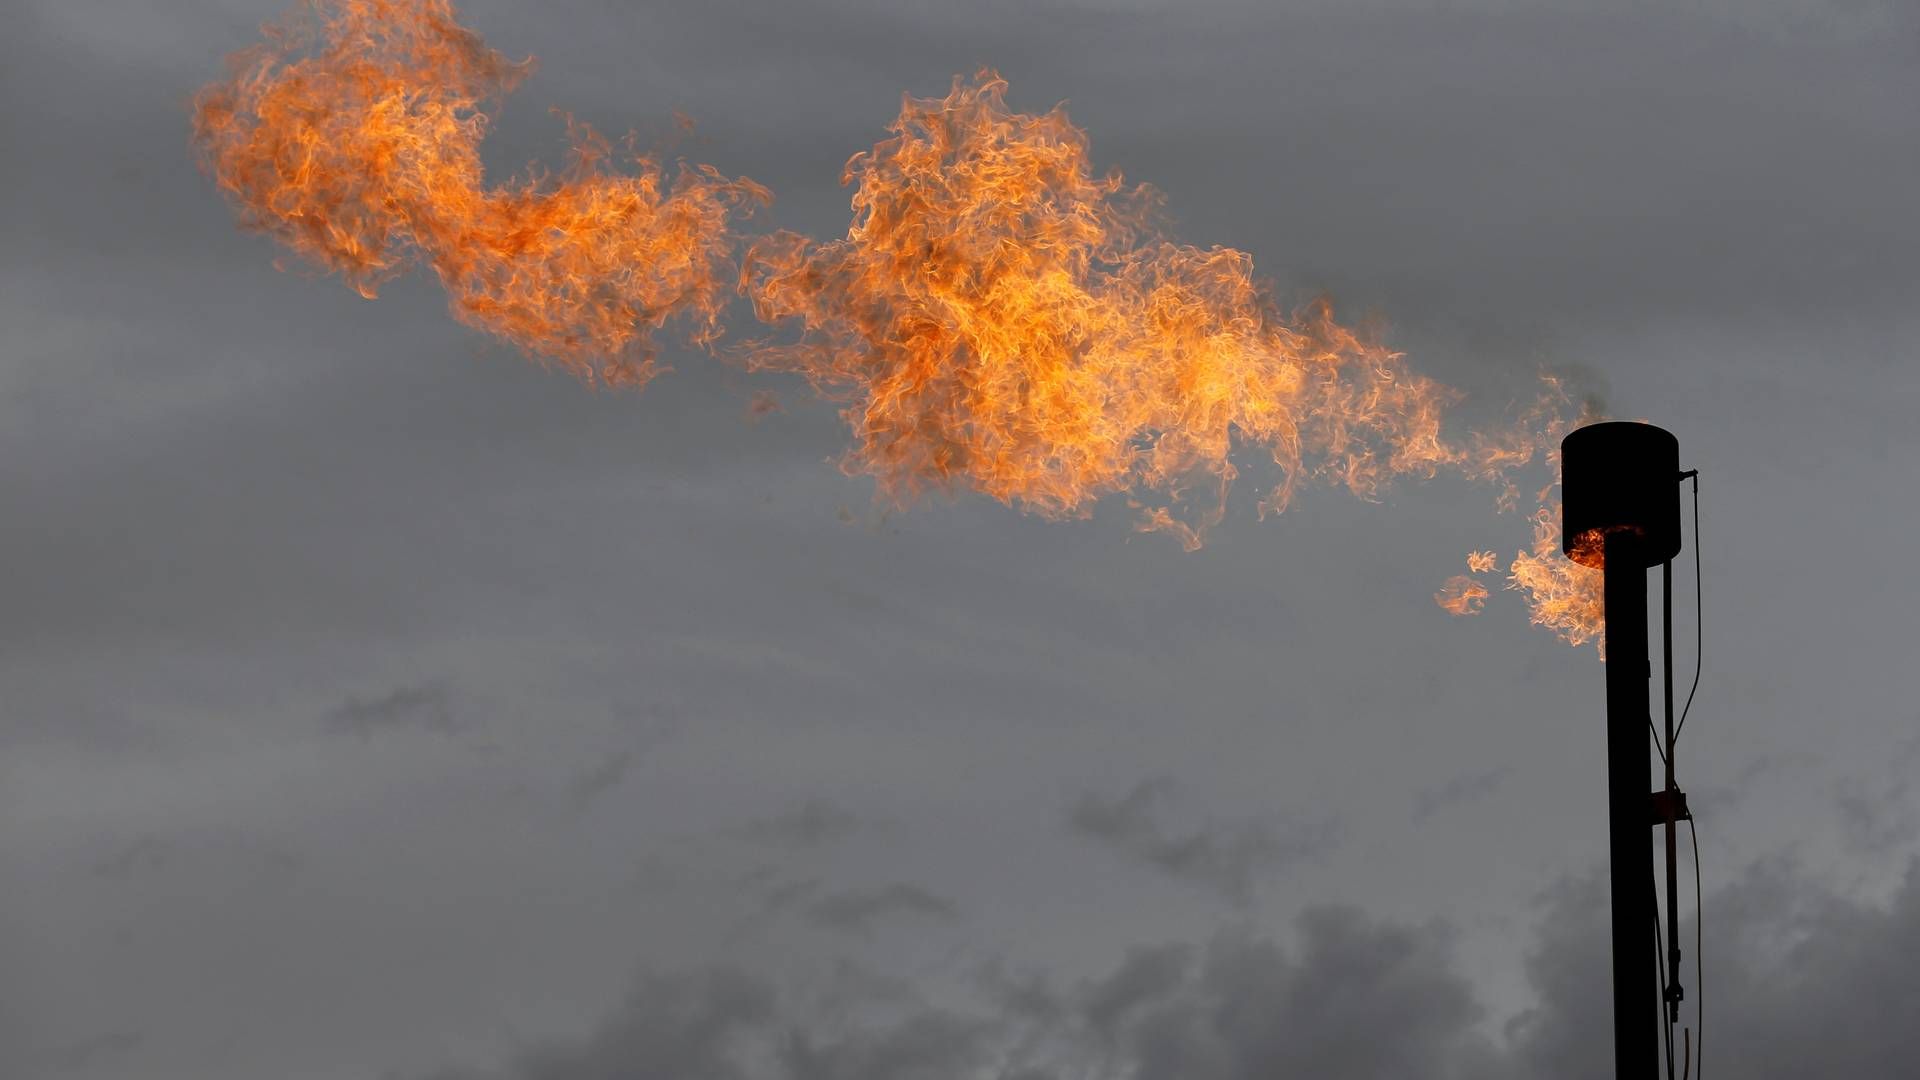 Gaspriserne eksploderede i 2022 efter Putins invasion af Ukraine. I dag er der gas nok igen, og priserne er faldet, men danske virksomheder har lært af historien og vil så vidt muligt undgå afhængighed af naturgas igen. | Foto: Angus Mordant